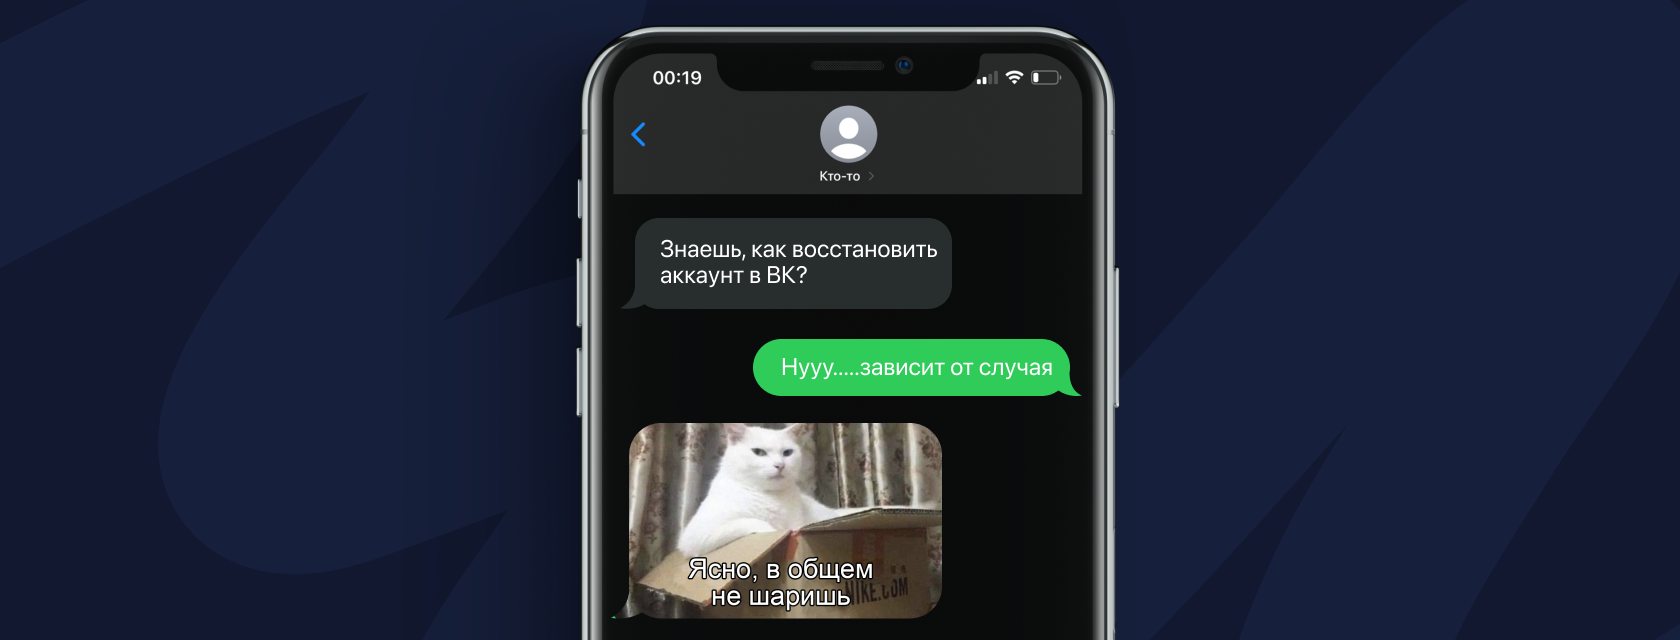 Почему Вконтакте не загружаются фотографии?